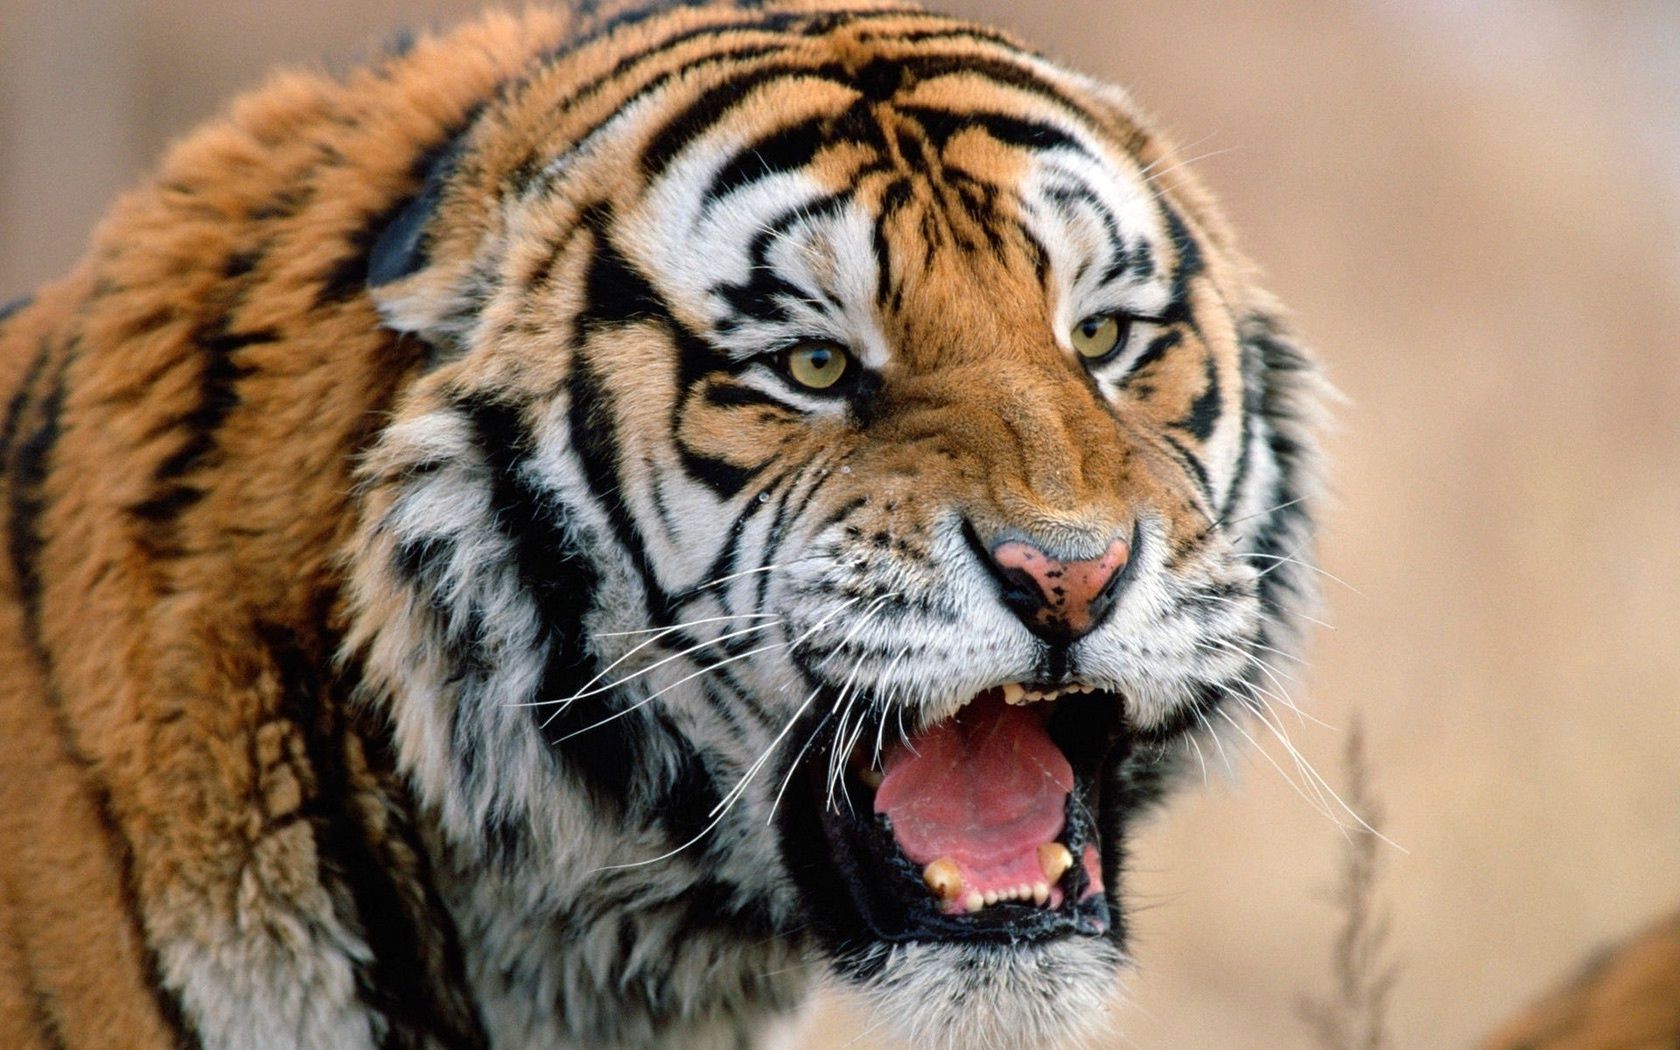 тигры дикой природы тигр кошка животное млекопитающее хищник дикий зоопарк охотник портрет мясоед мех сибирский полоса глаз большой злой глядя природа джунгли